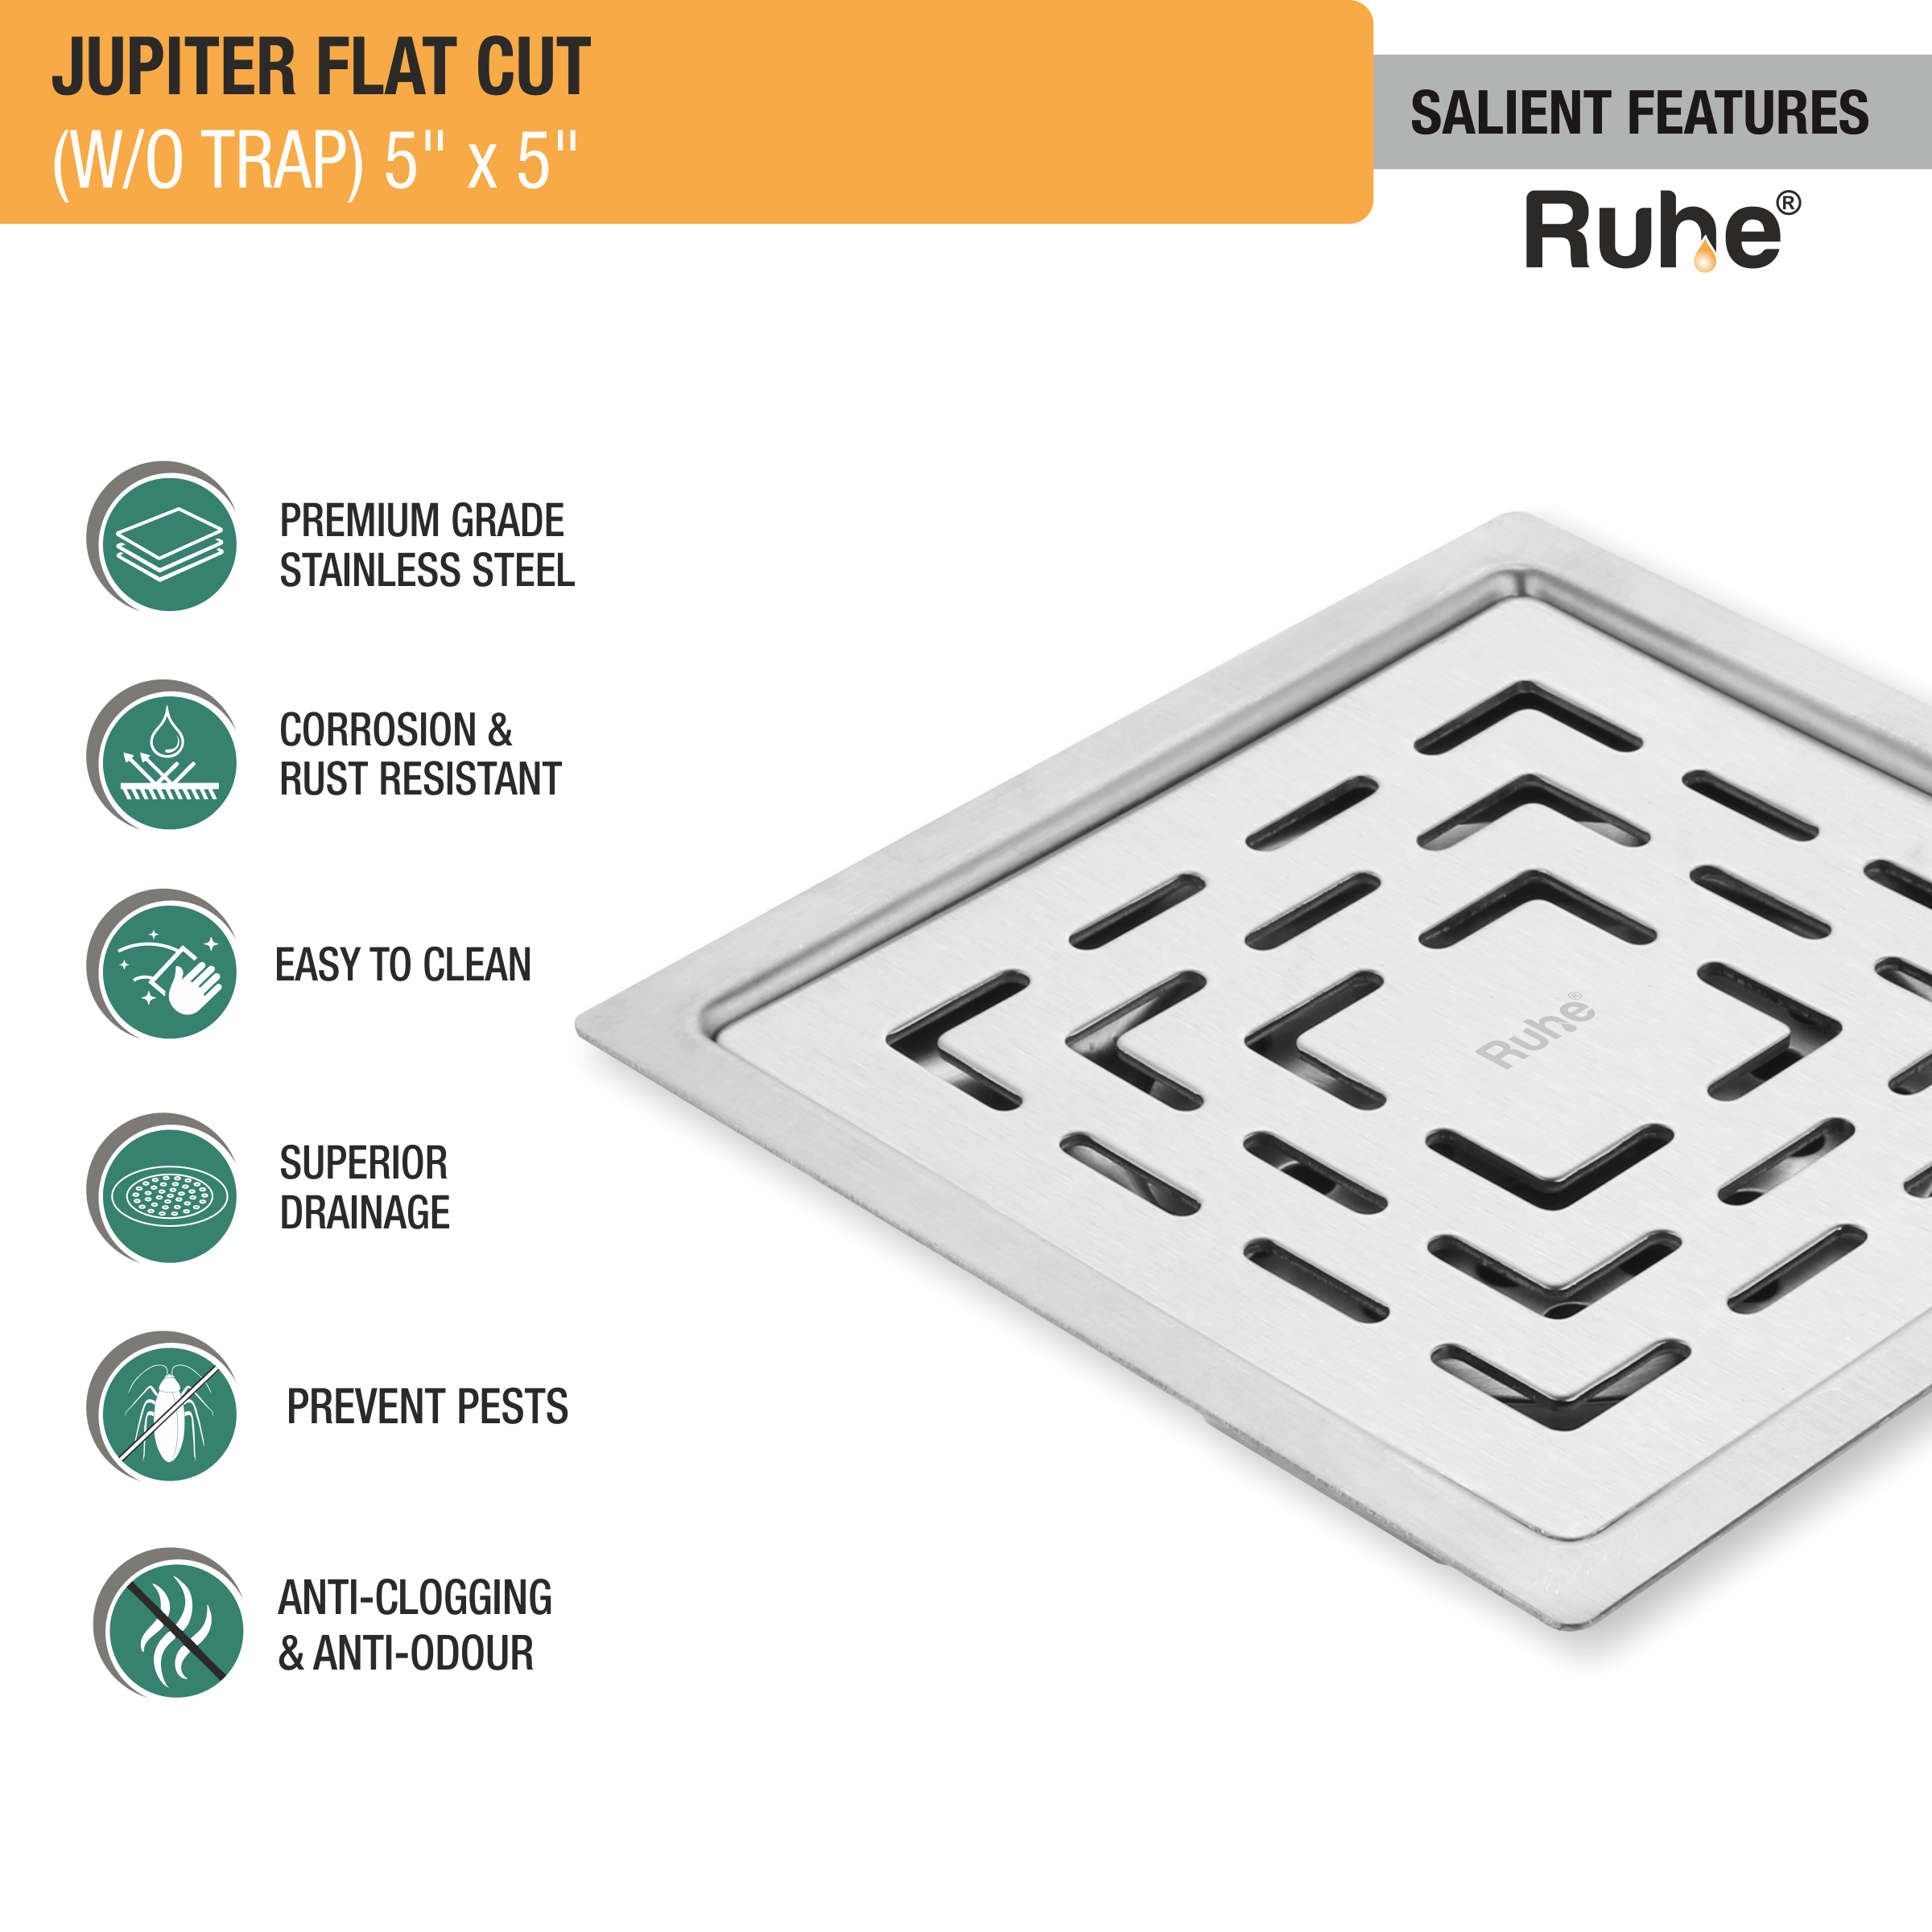 Jupiter Square Premium Flat Cut Floor Drain (5 x 5 Inches) features